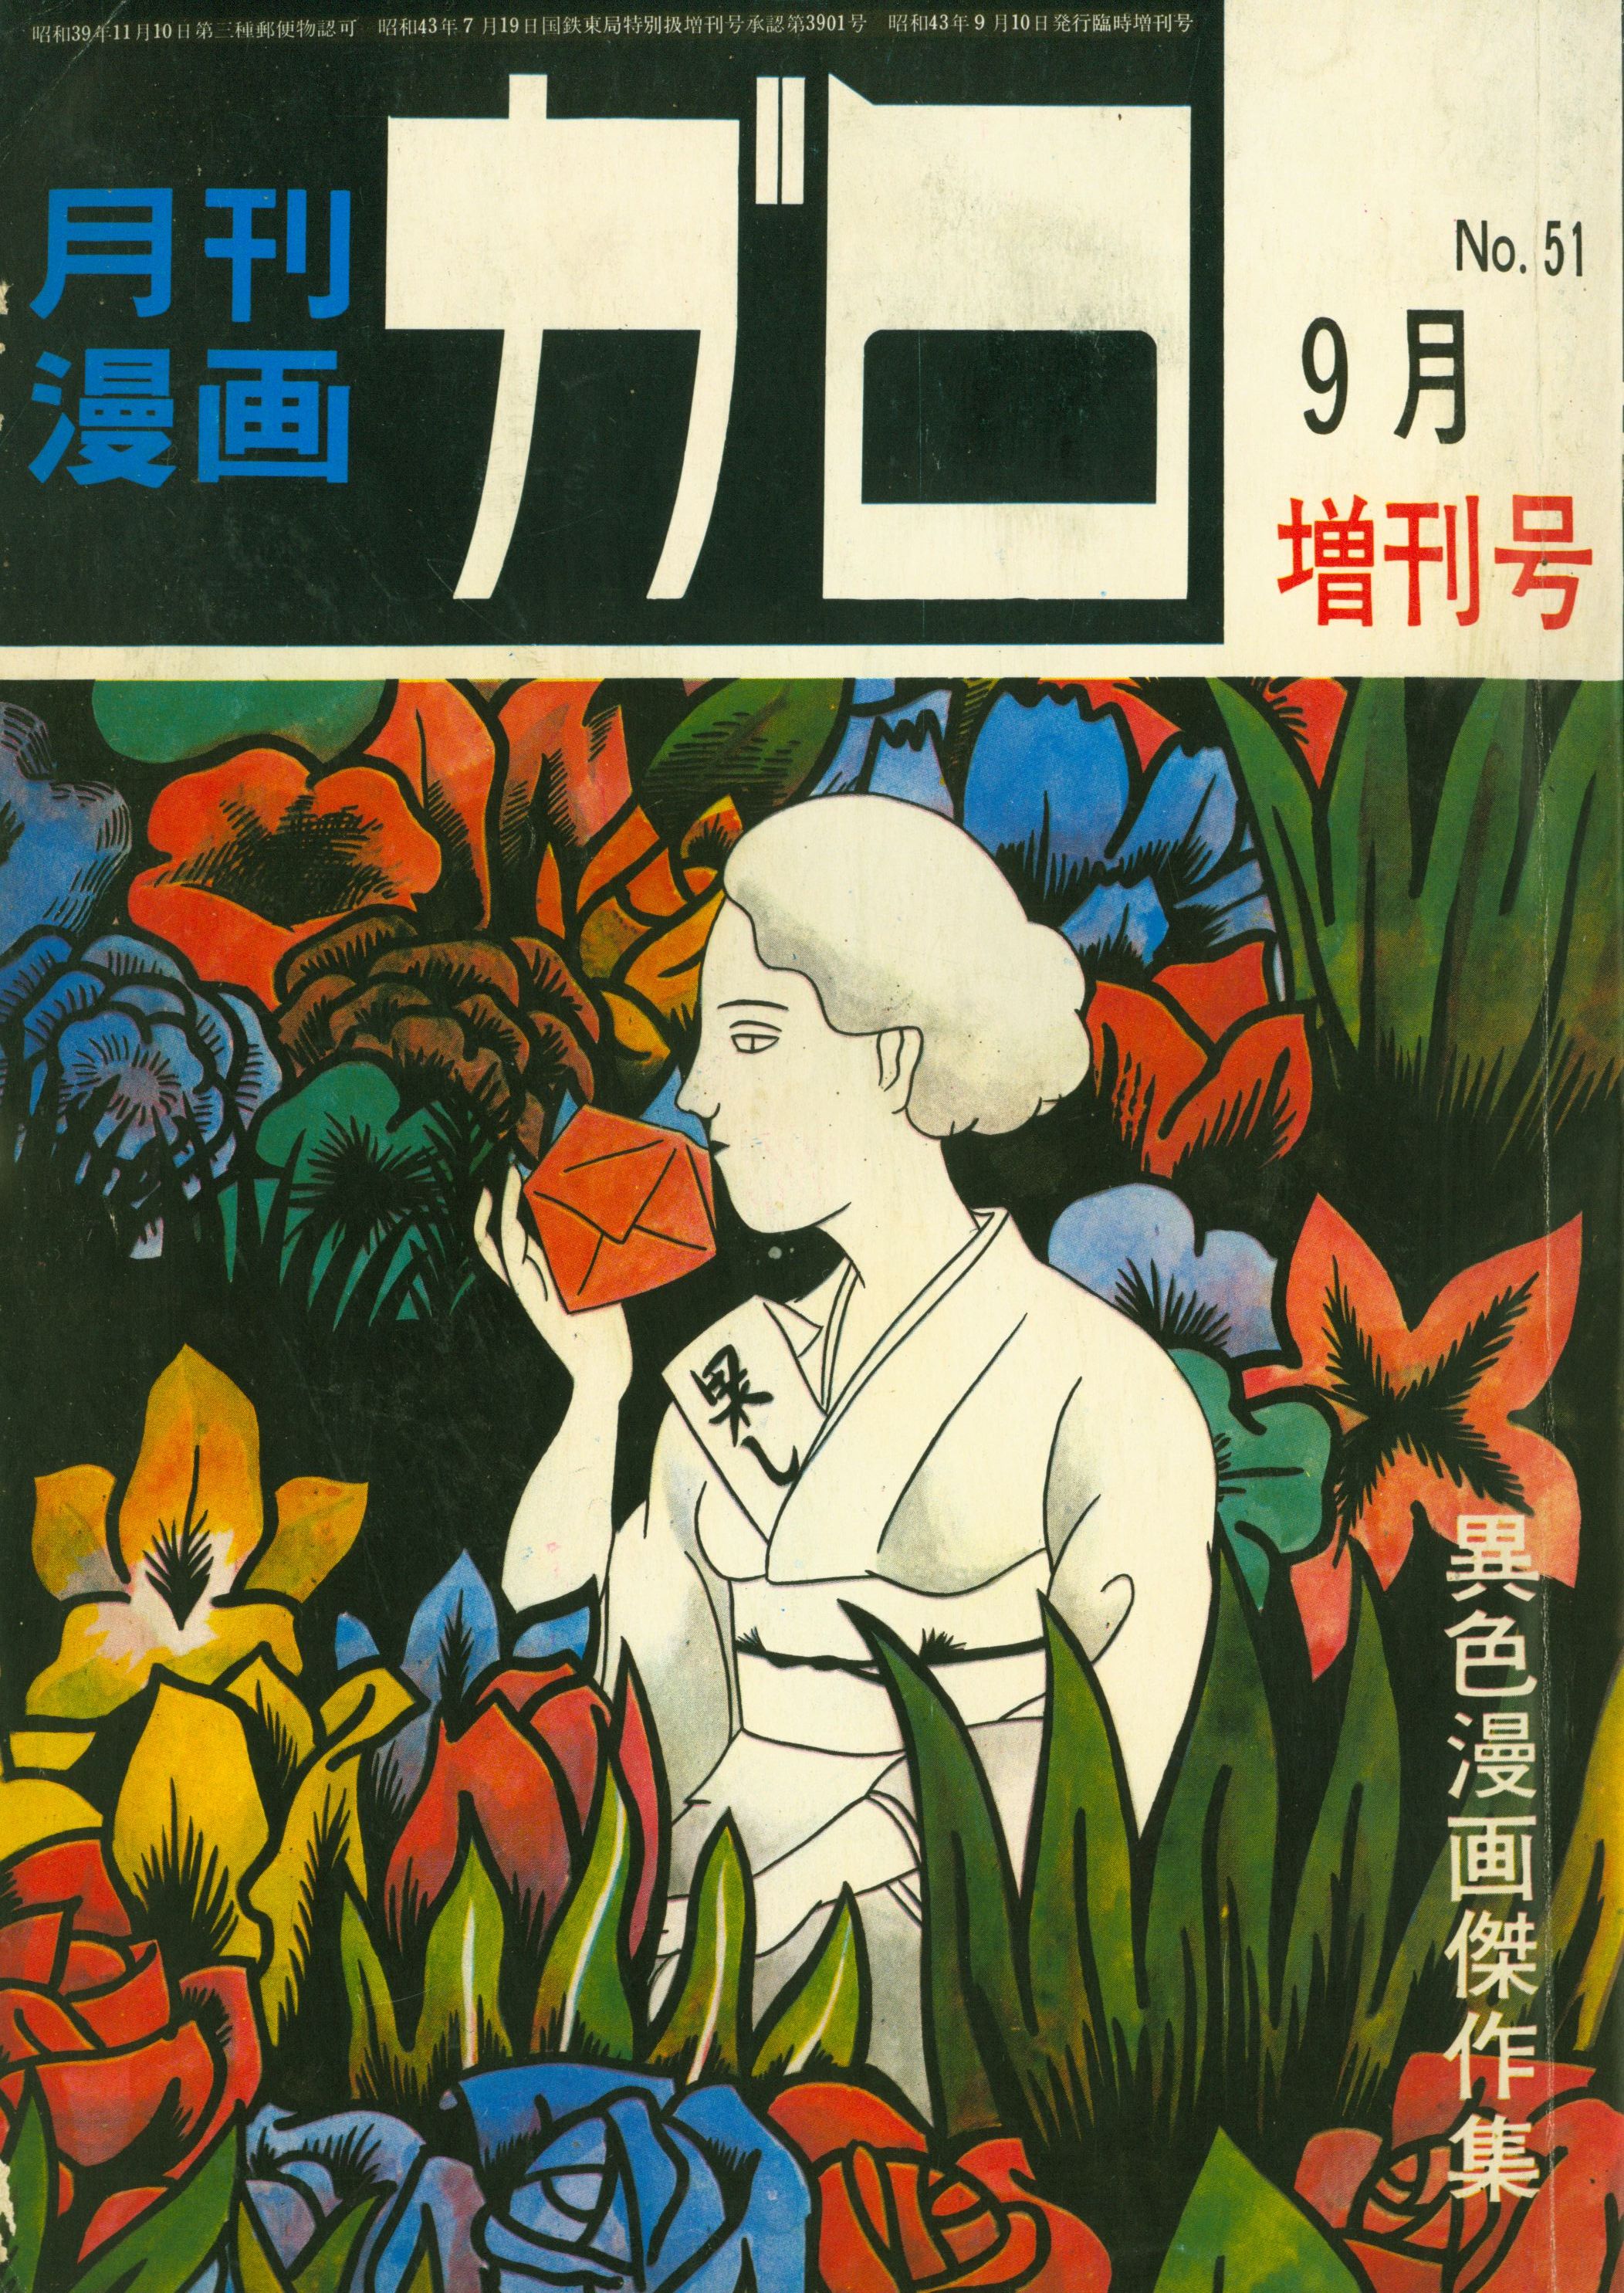 青林堂 1968年(昭和43年)の漫画雑誌 『月刊ガロ増刊1968年(昭和43年)09